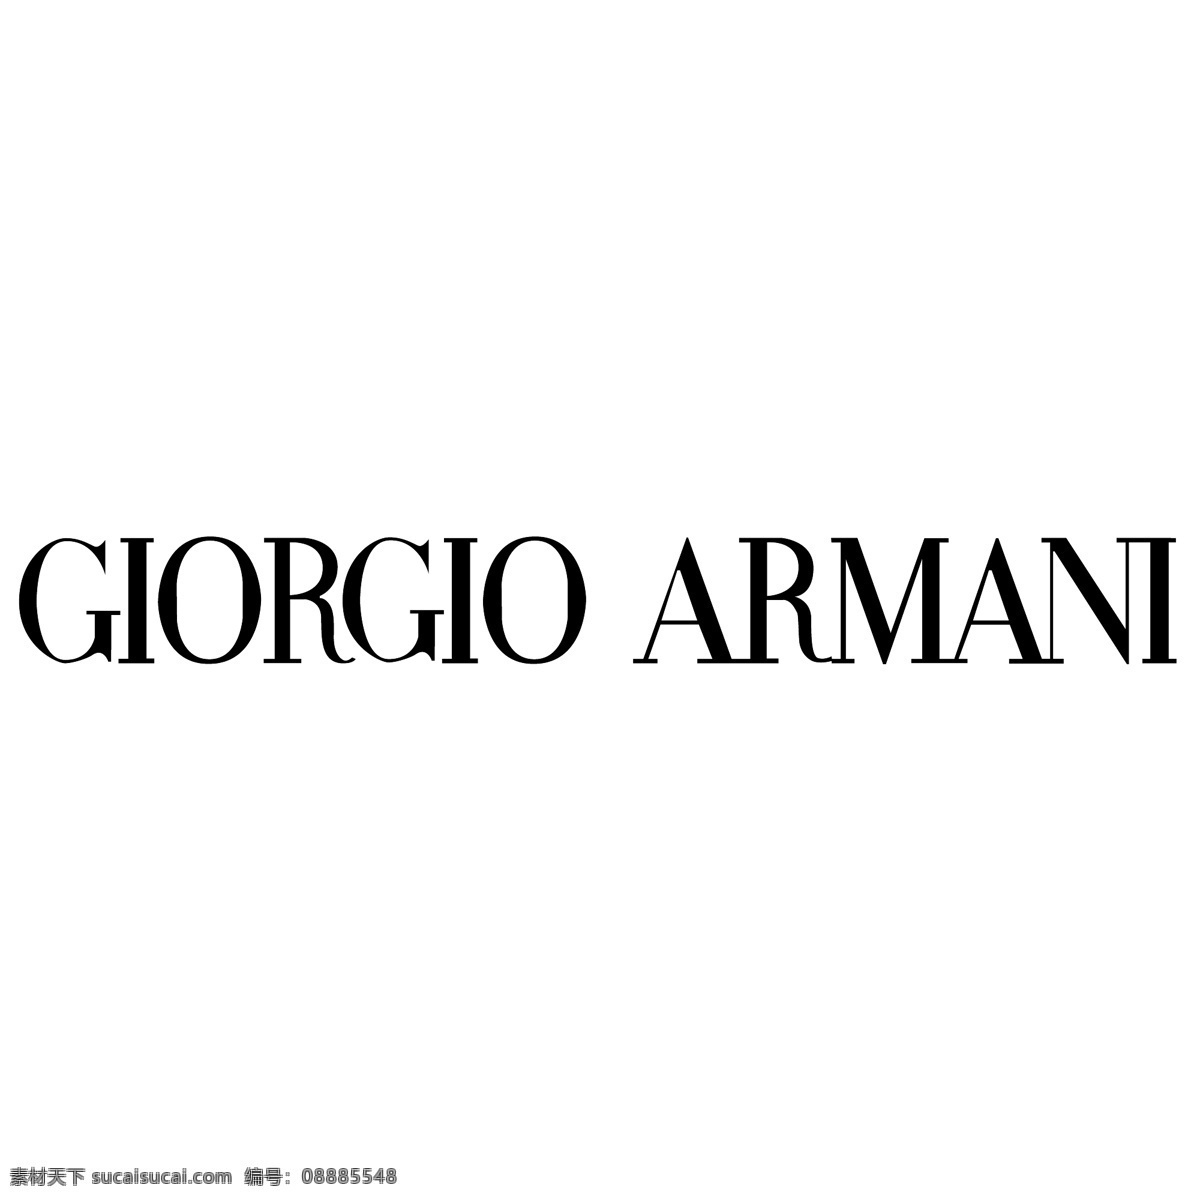 吉奥 阿玛尼 矢量标志下载 免费矢量标识 商标 品牌标识 标识 矢量 免费 品牌 公司 白色